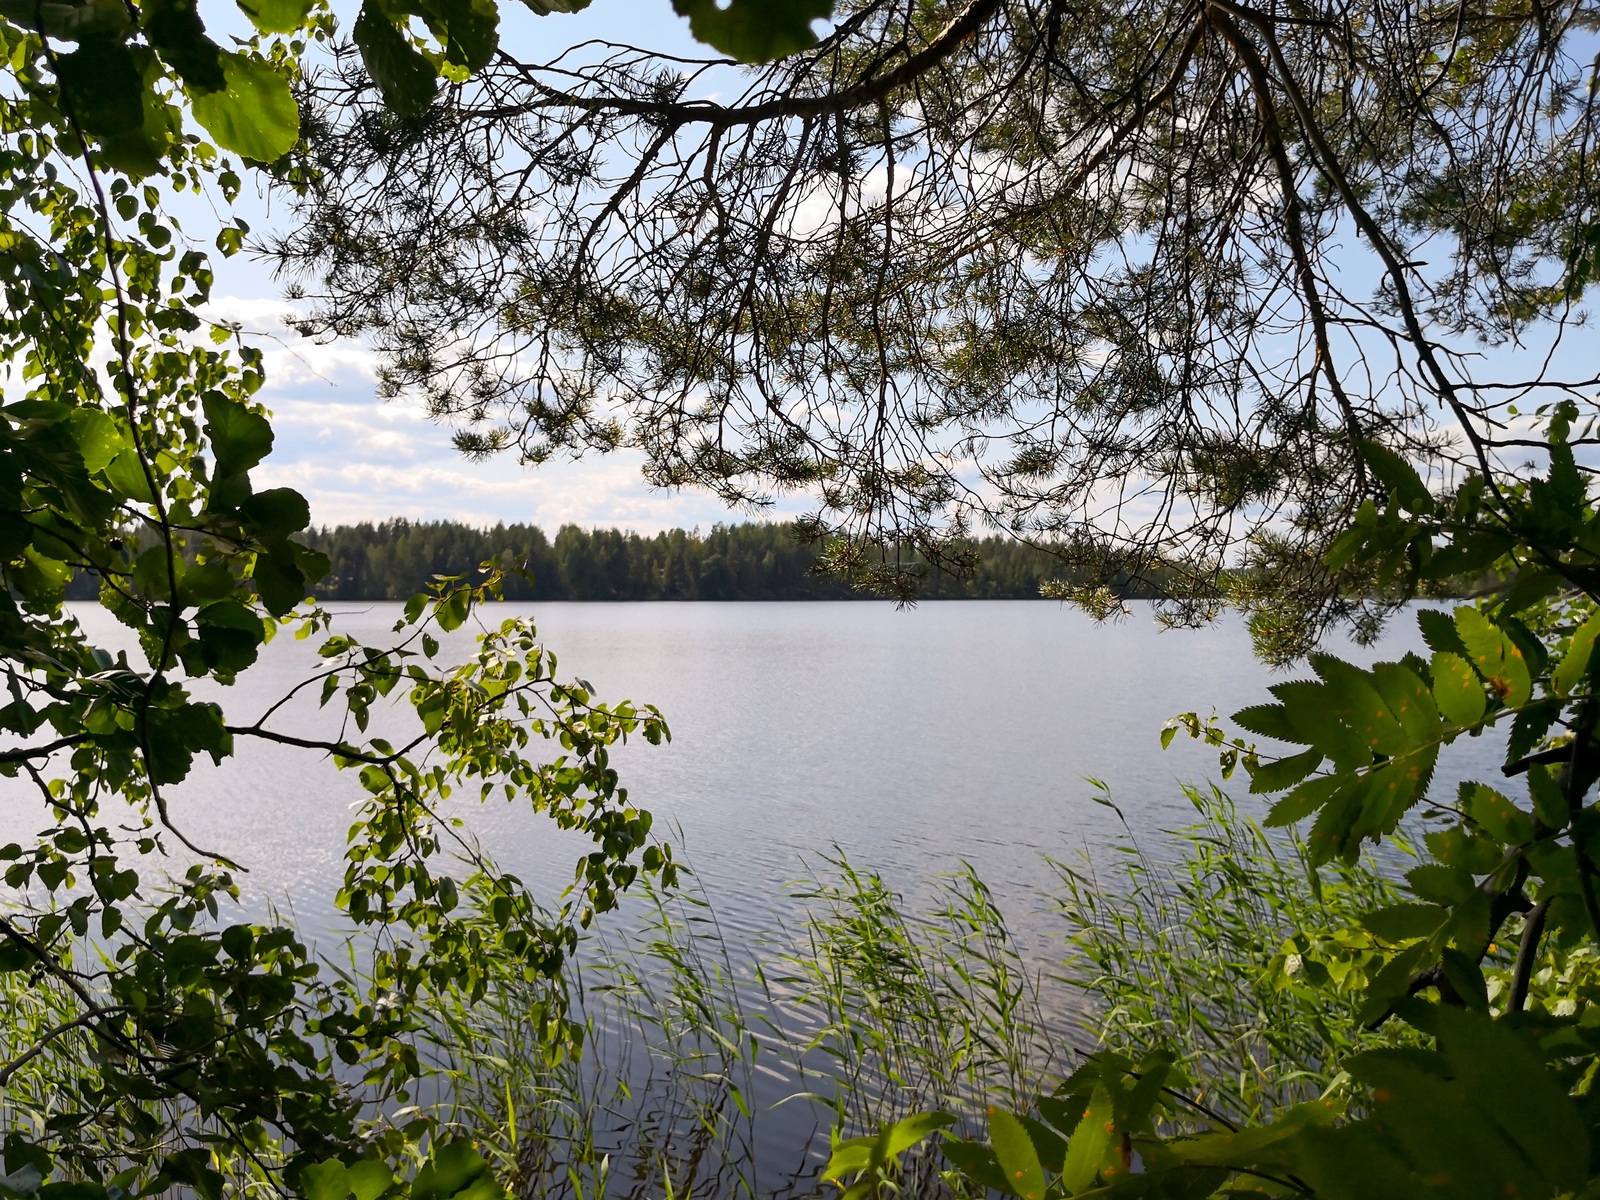 Lehtipuiden ja männyn oksat reunustavat kesäistä järvimaisemaa. Rantavedessä kasvaa vesikasveja.